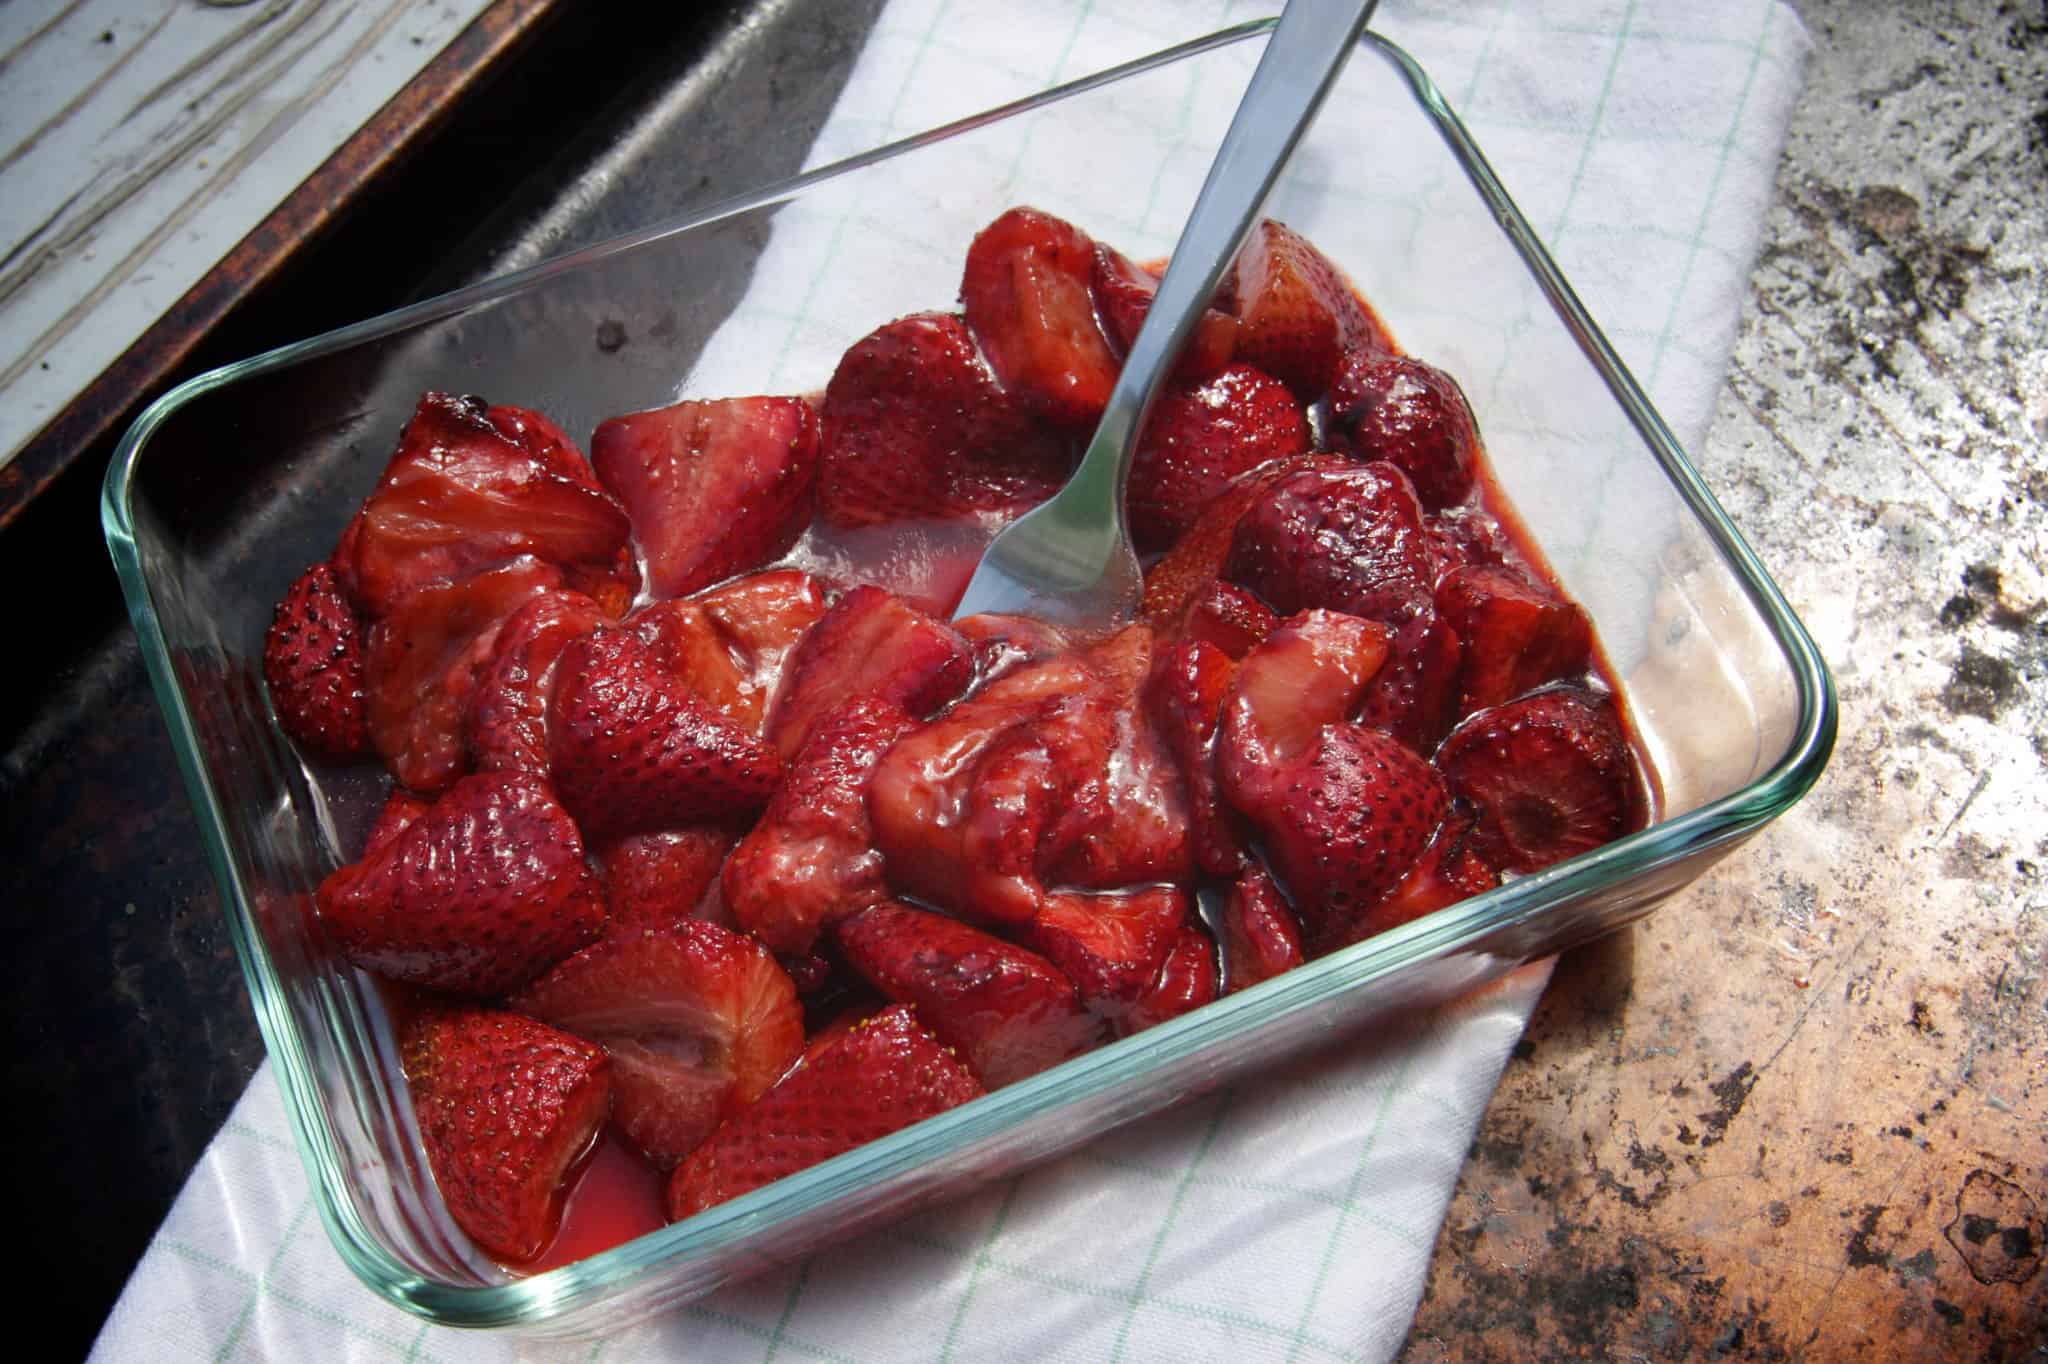 Balsamic strawberries unusual food pairings